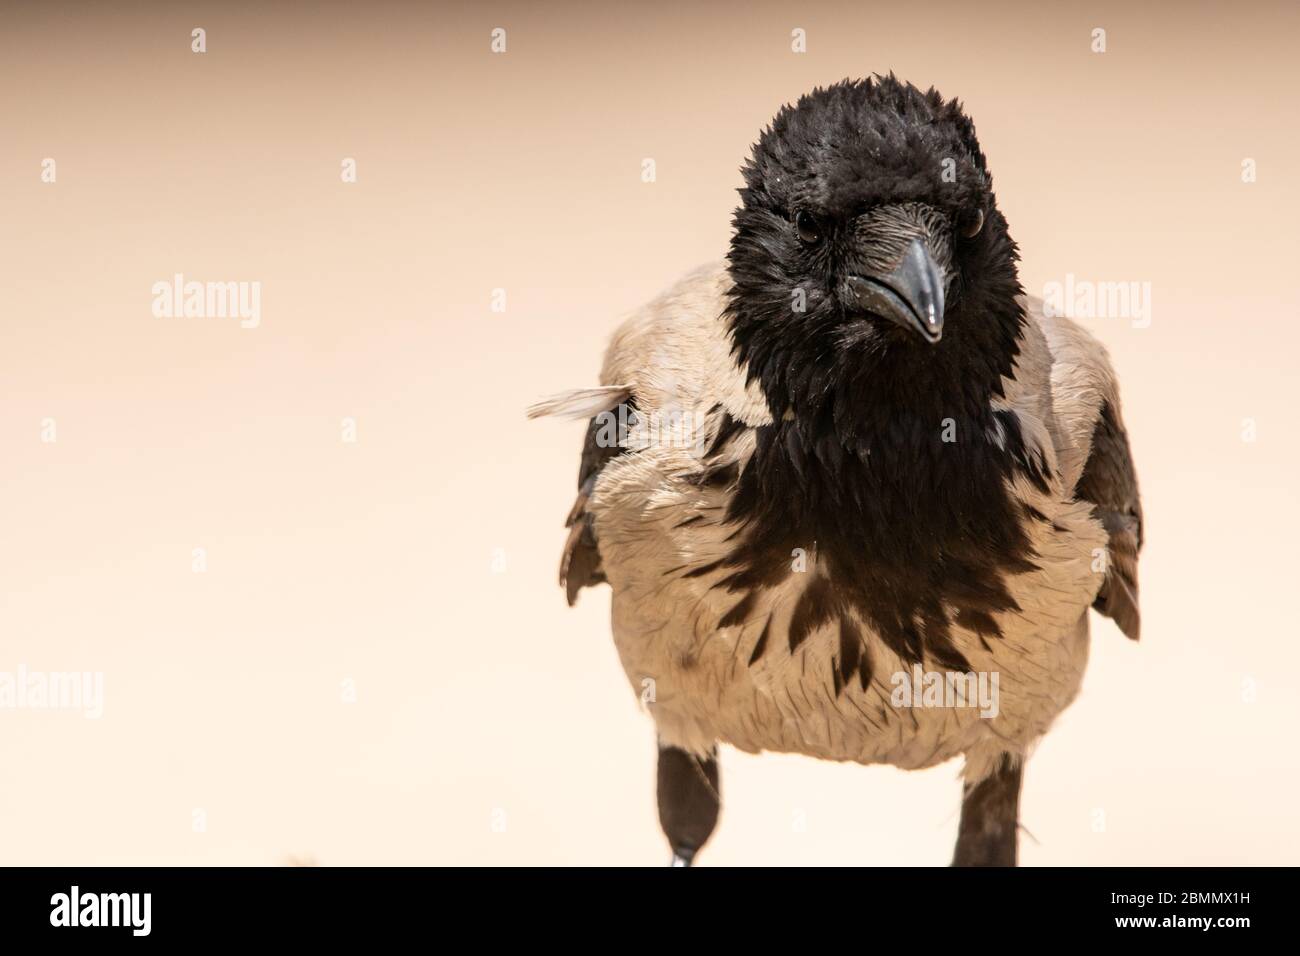 Corvo con cappuccio (corvus cornix) il corvo con cappuccio è un uccello diffuso in tutta Europa e Medio Oriente. È un scavenger onnivoro, e. Foto Stock